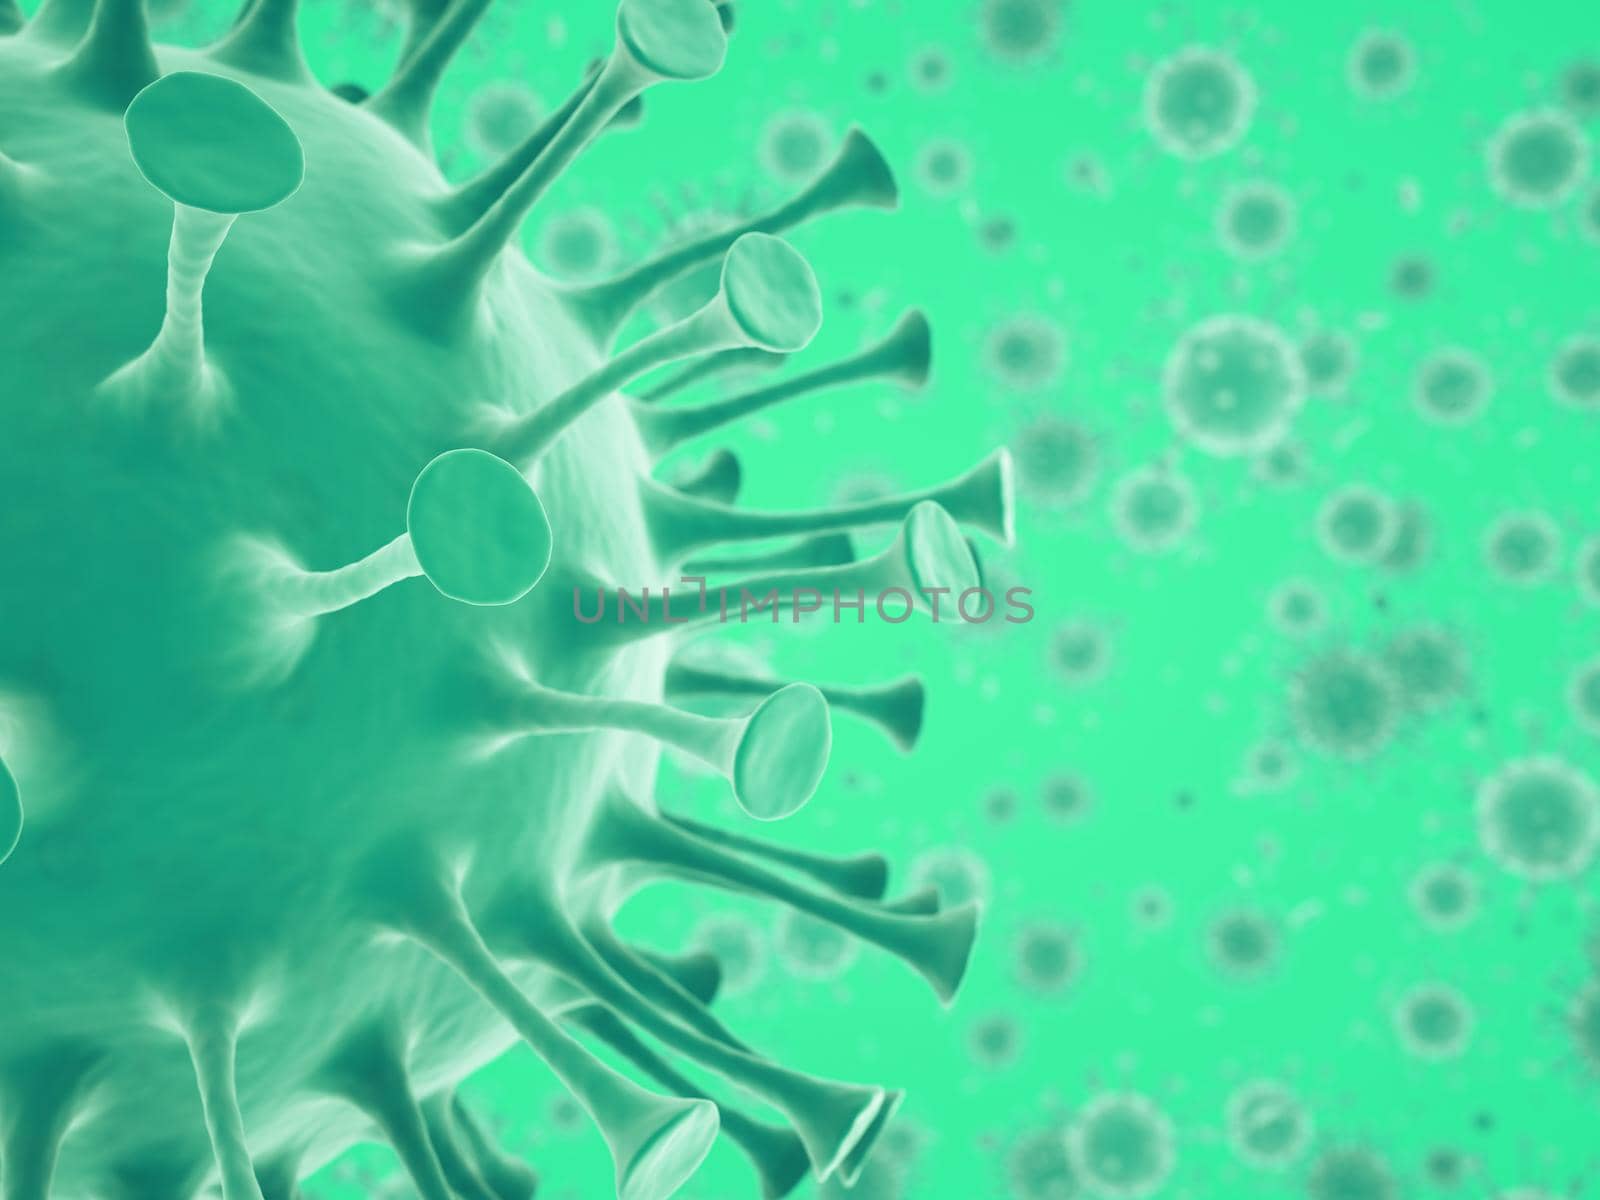 Covid-19 Coronavirus or Novel coronavirus 2019-nCoV cells and epidemic. 3d render, 3d illustration